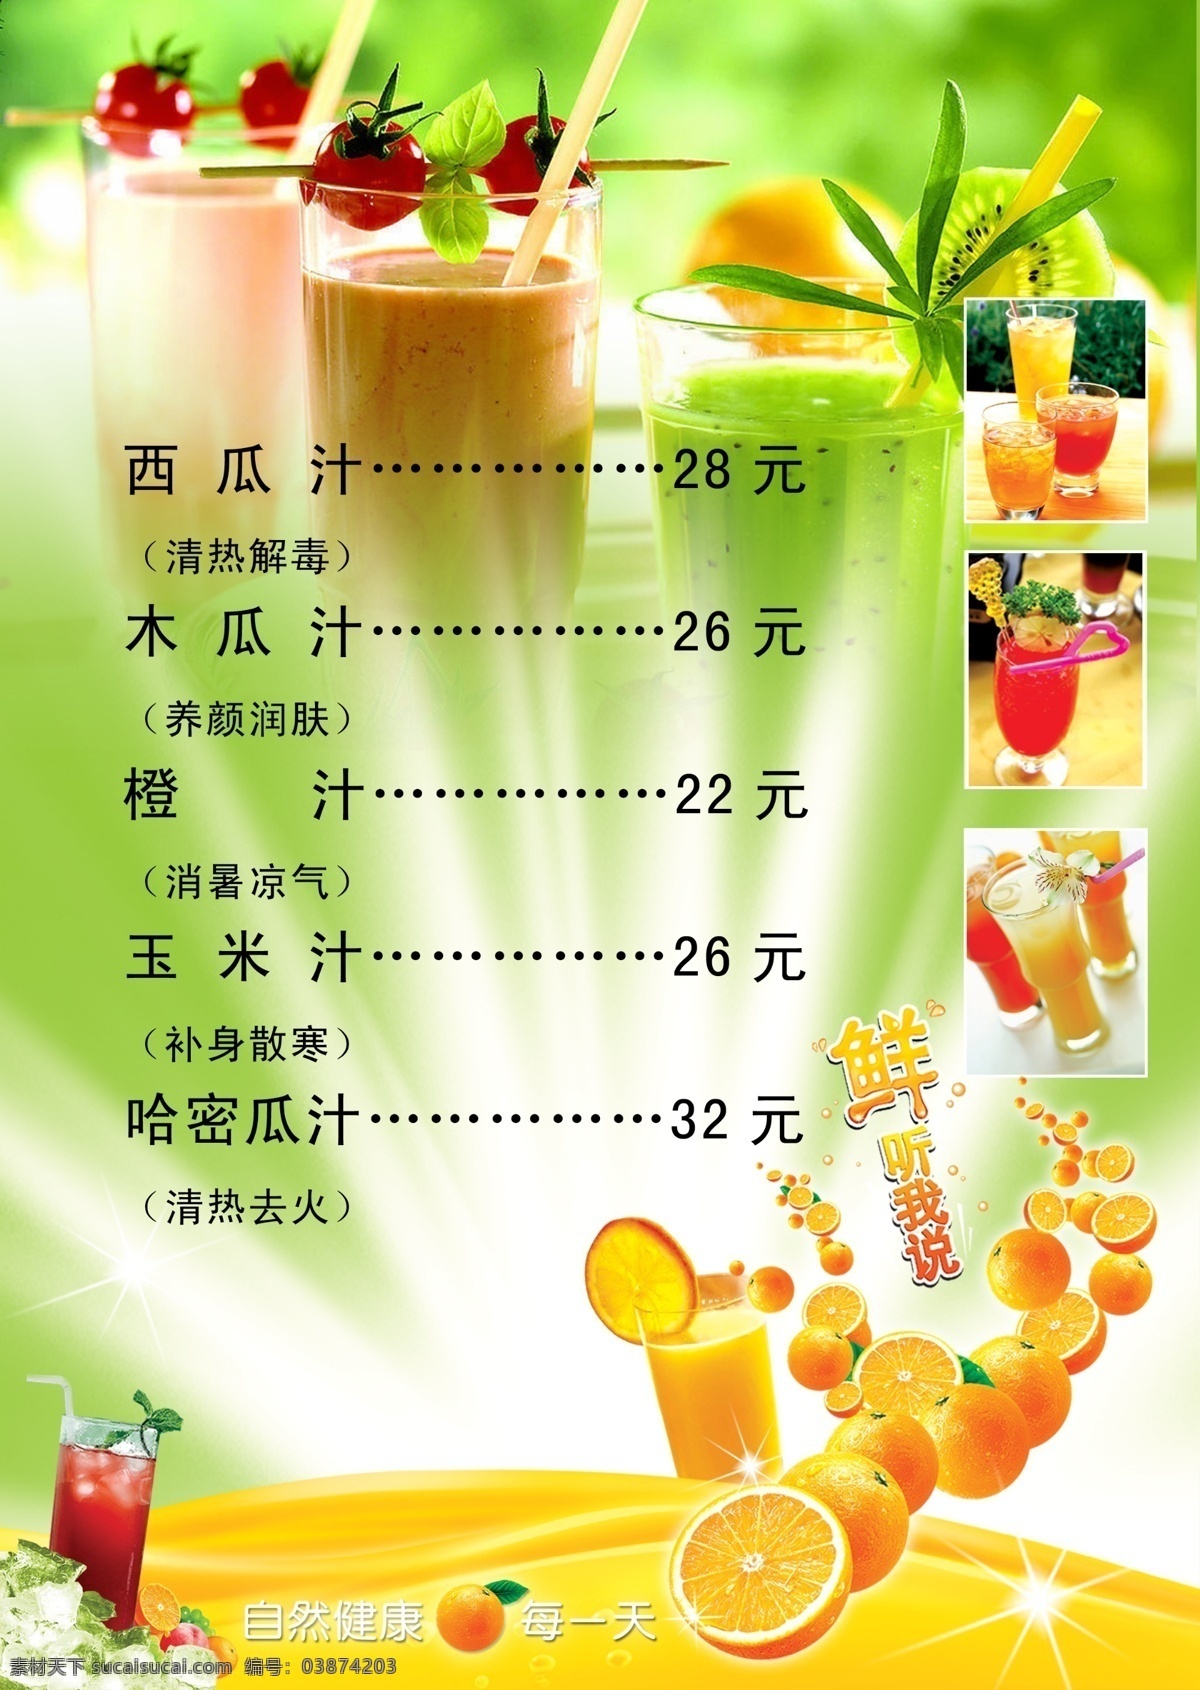 果汁菜单 果汁 绿色背景 个性字体 个性条纹 橙子 柠檬 草莓 分层 源文件 菜单菜谱 广告设计模板